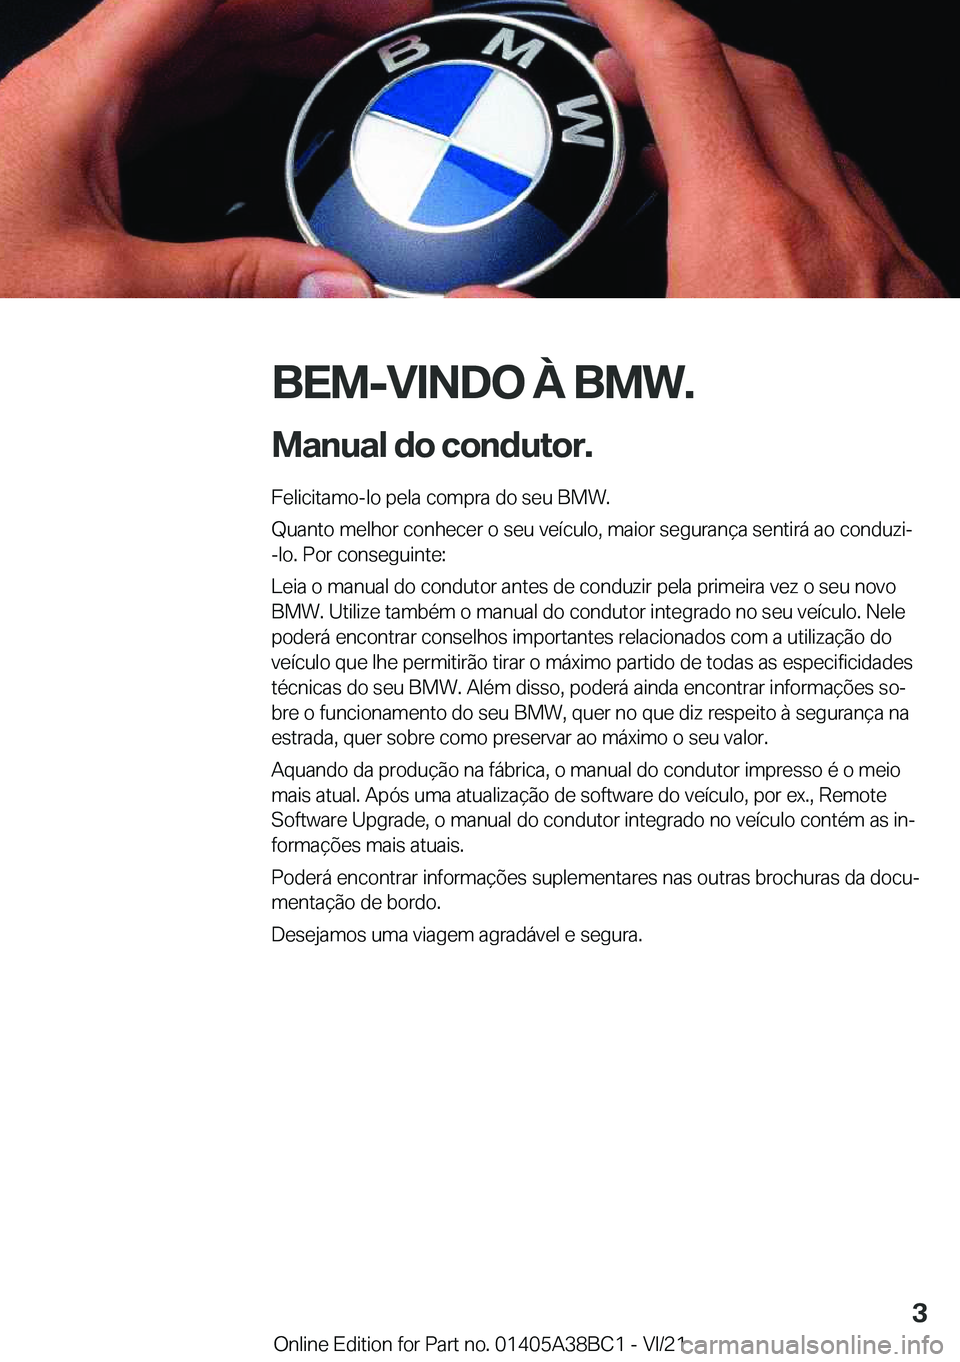 BMW M4 2022  Manual do condutor (in Portuguese) �B�E�M�-�V�I�N�D�O��À��B�M�W�.
�M�a�n�u�a�l��d�o��c�o�n�d�u�t�o�r�. �F�e�l�i�c�i�t�a�m�o�-�l�o��p�e�l�a��c�o�m�p�r�a��d�o��s�e�u��B�M�W�.
�Q�u�a�n�t�o��m�e�l�h�o�r��c�o�n�h�e�c�e�r��o��s